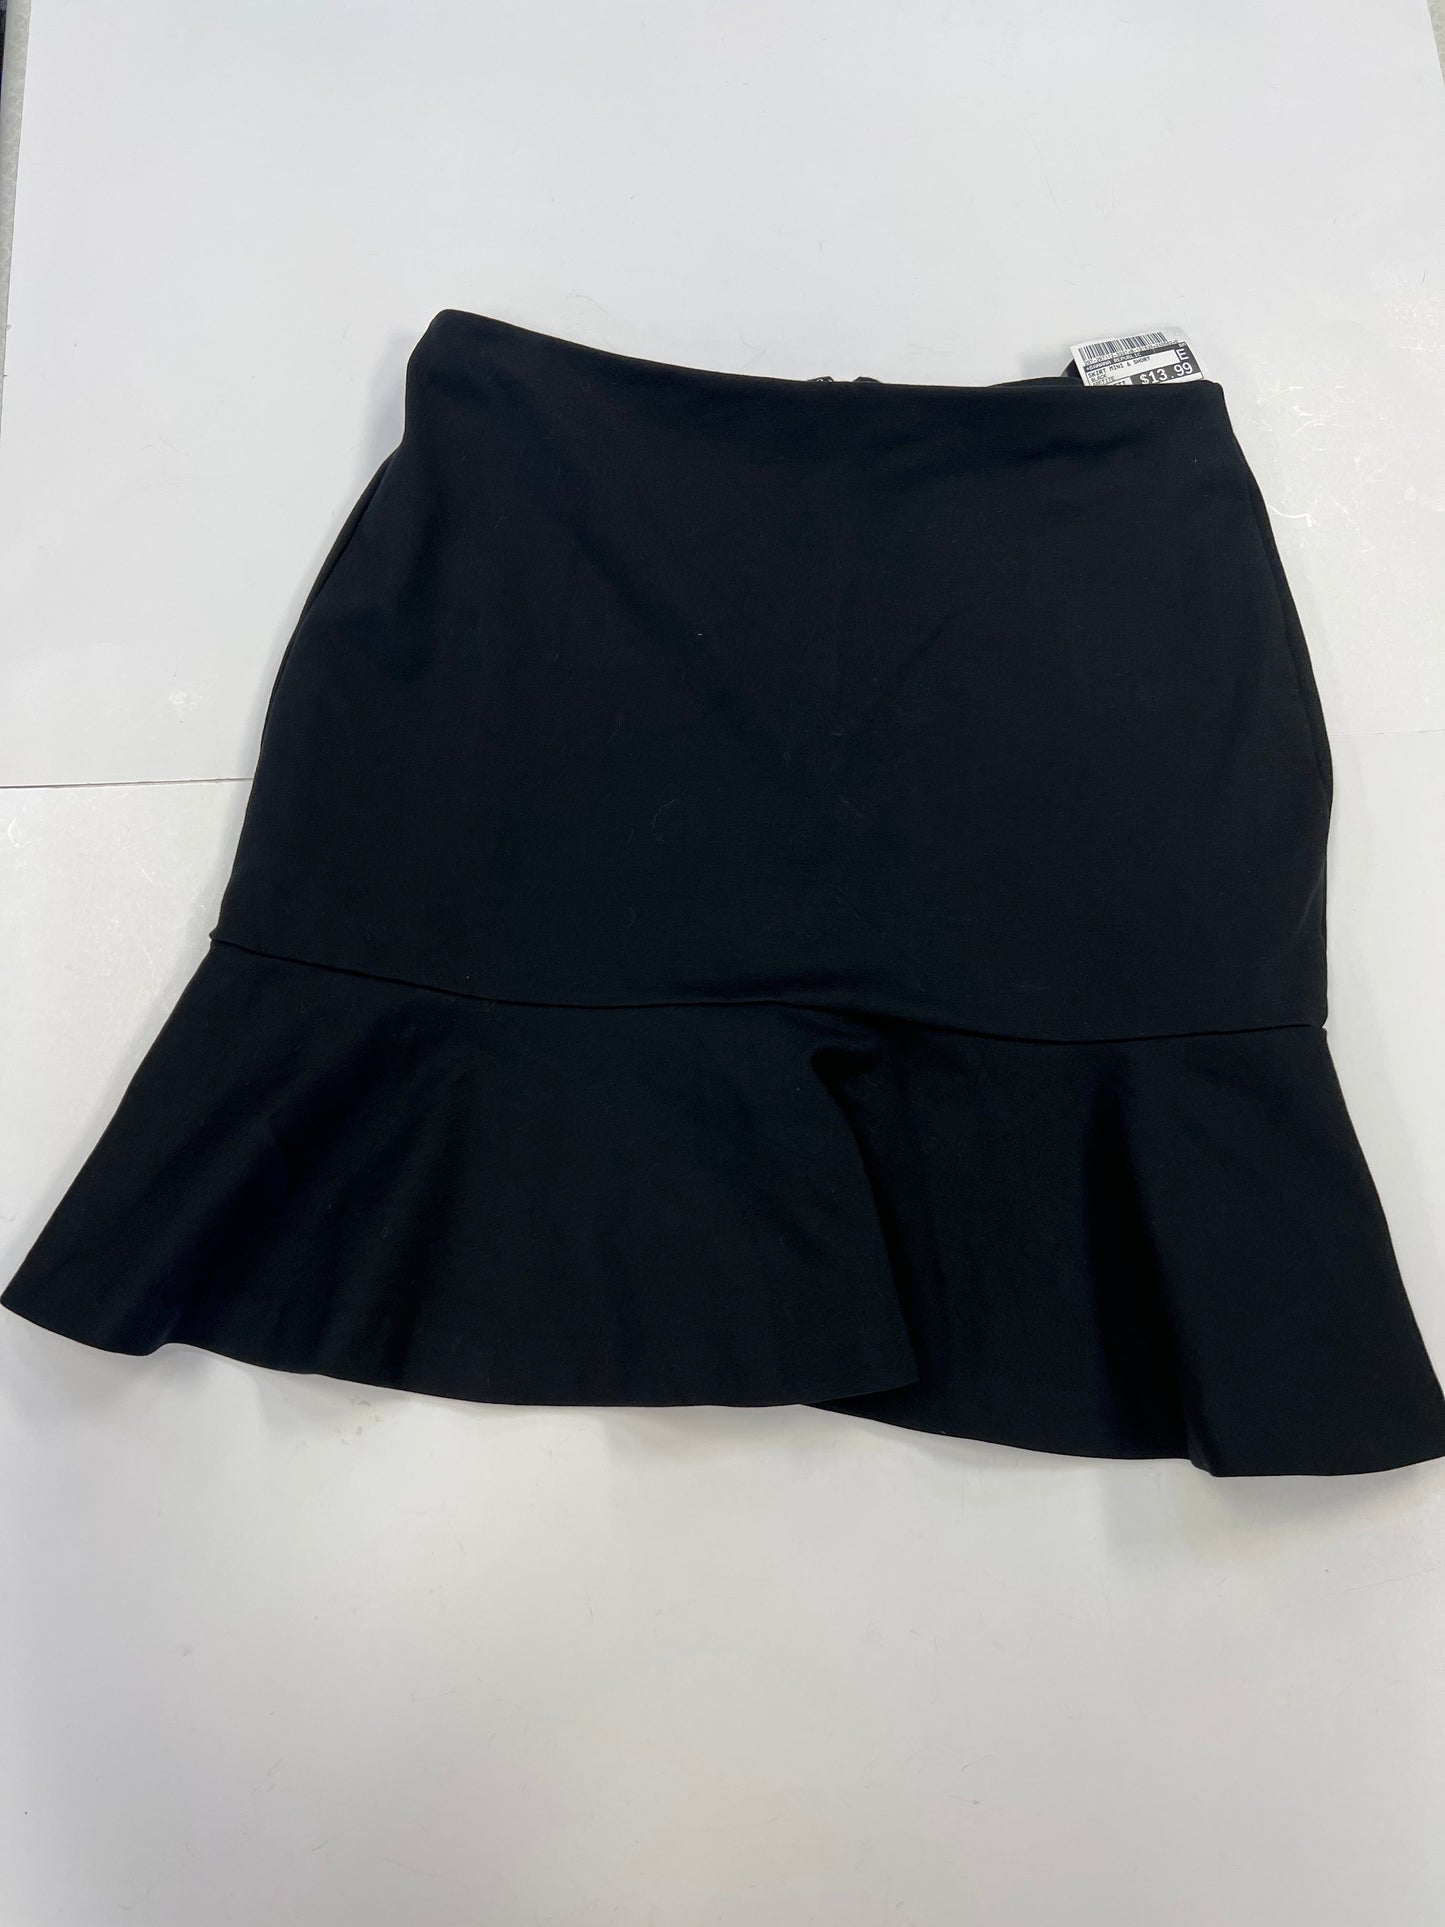 Skirt Mini & Short By Banana Republic  Size: 4petite